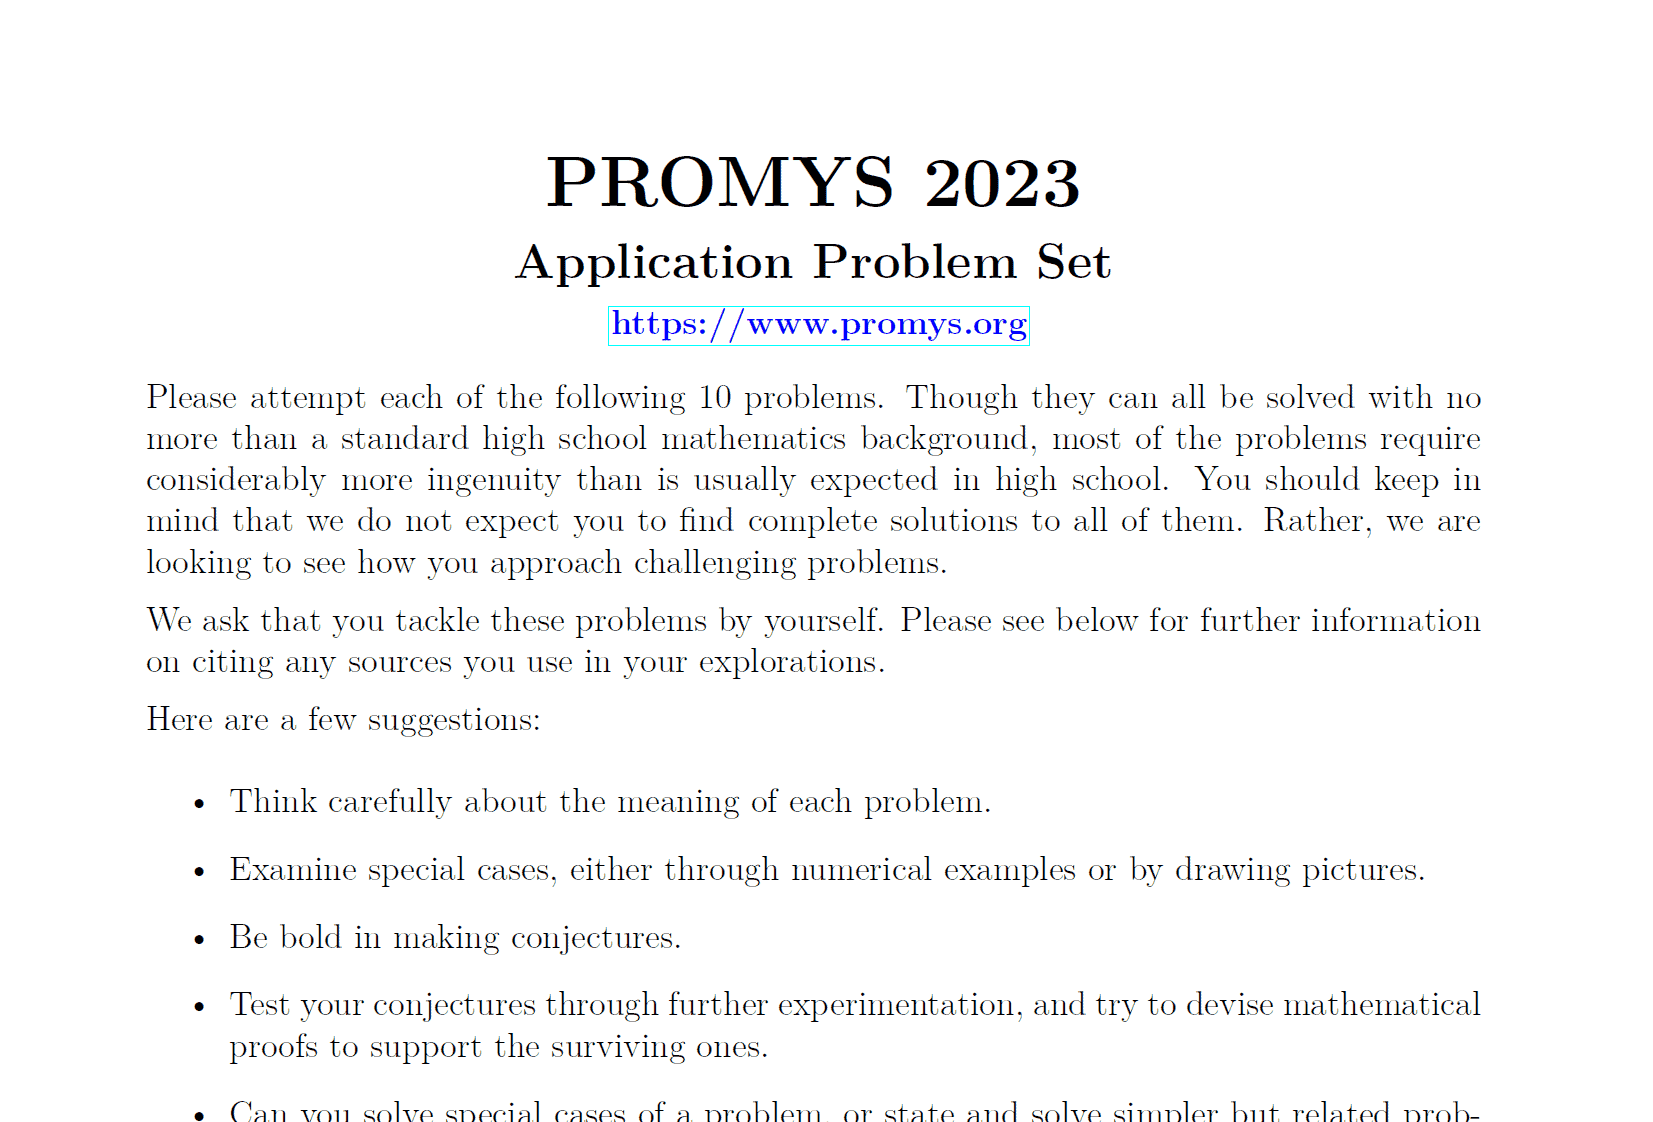 数学竞赛代考PROMYS 2023 Application Problem Set代写 代写 代写 UprivateTA™ 数学代写